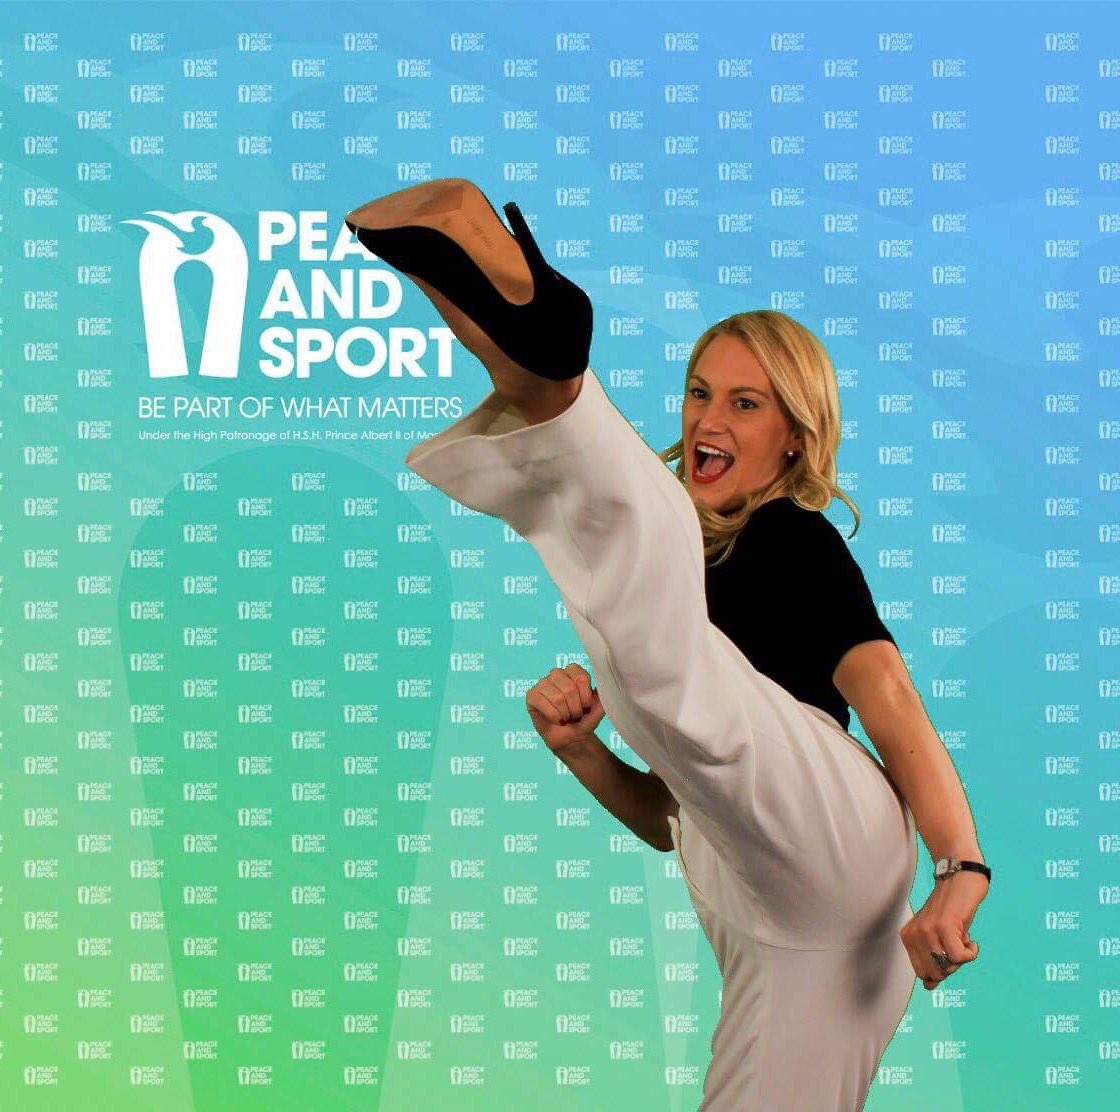 Quelle photo préférez-vous..portrait ou coup de pied? #Taekwondo #GameOnforPeace #Championne #PeaceAndSport